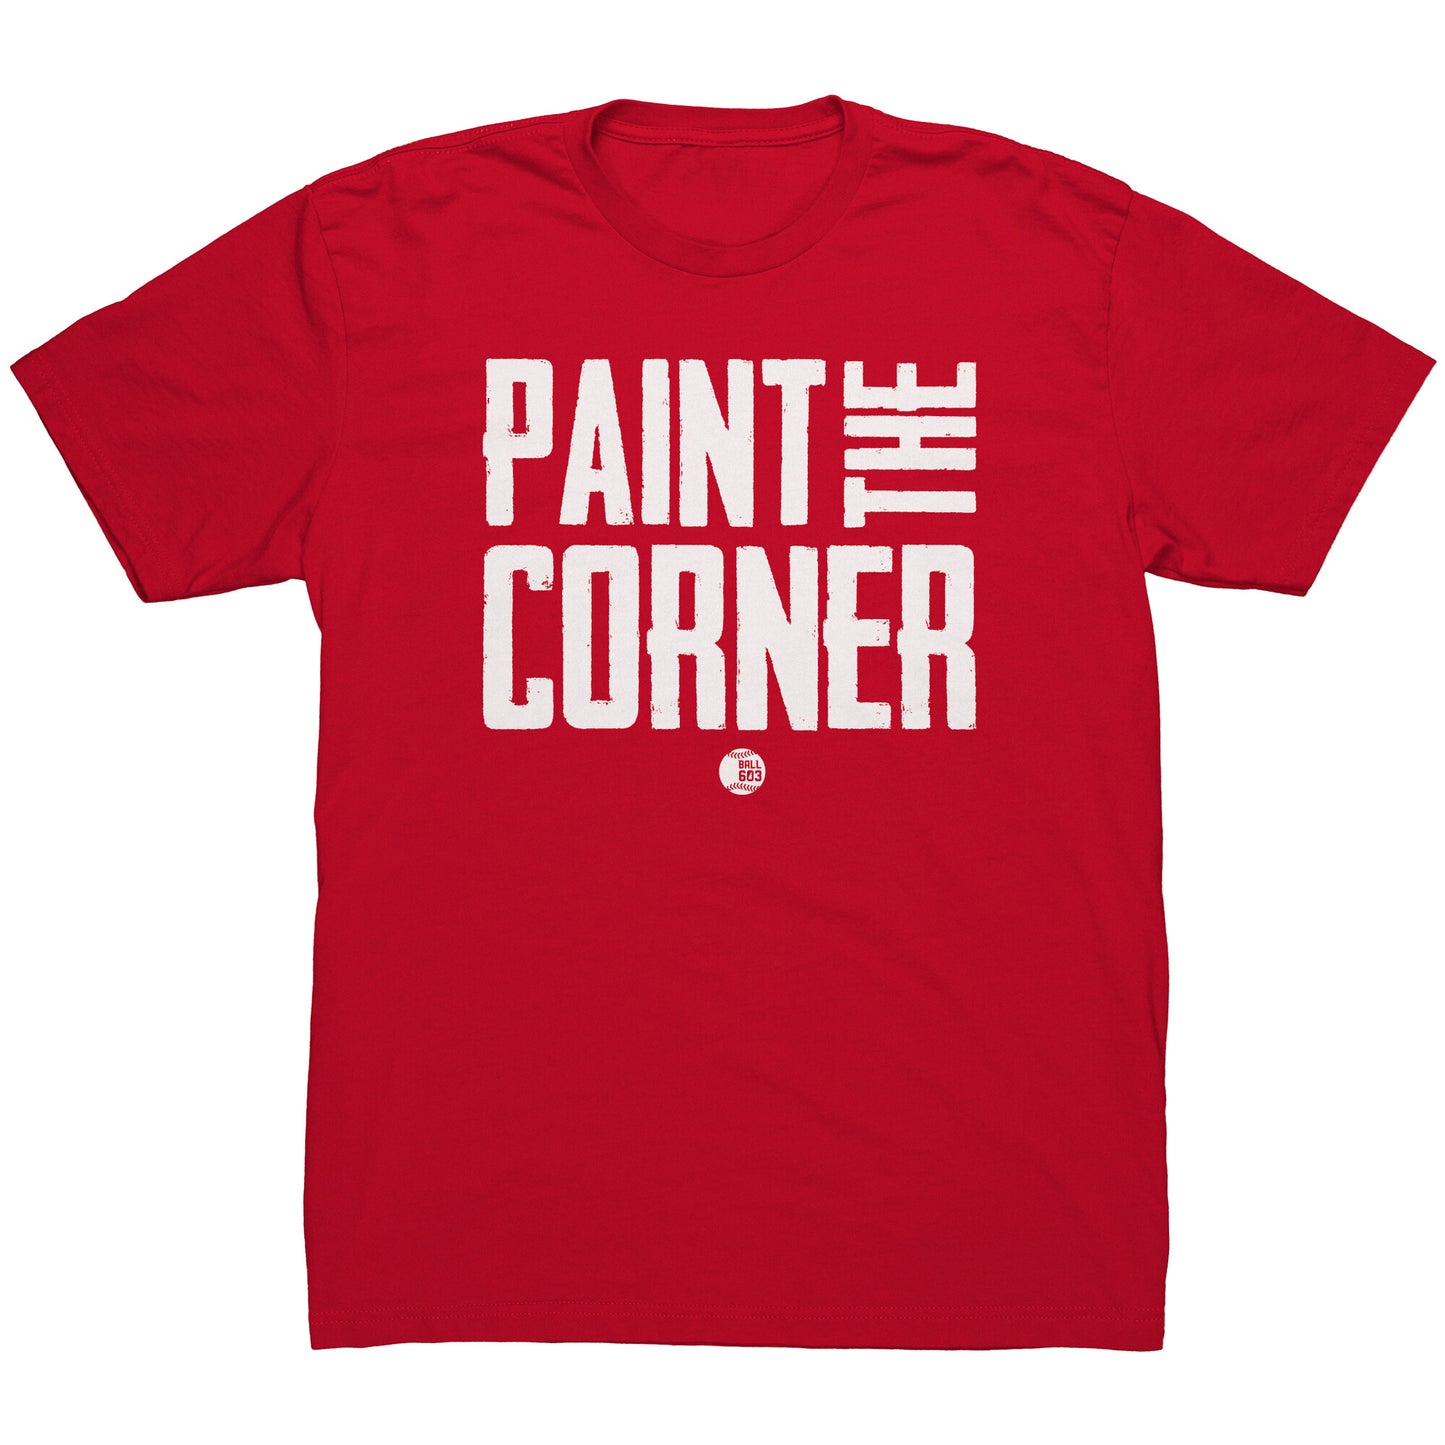 Paint The Corner (Men's Cut)